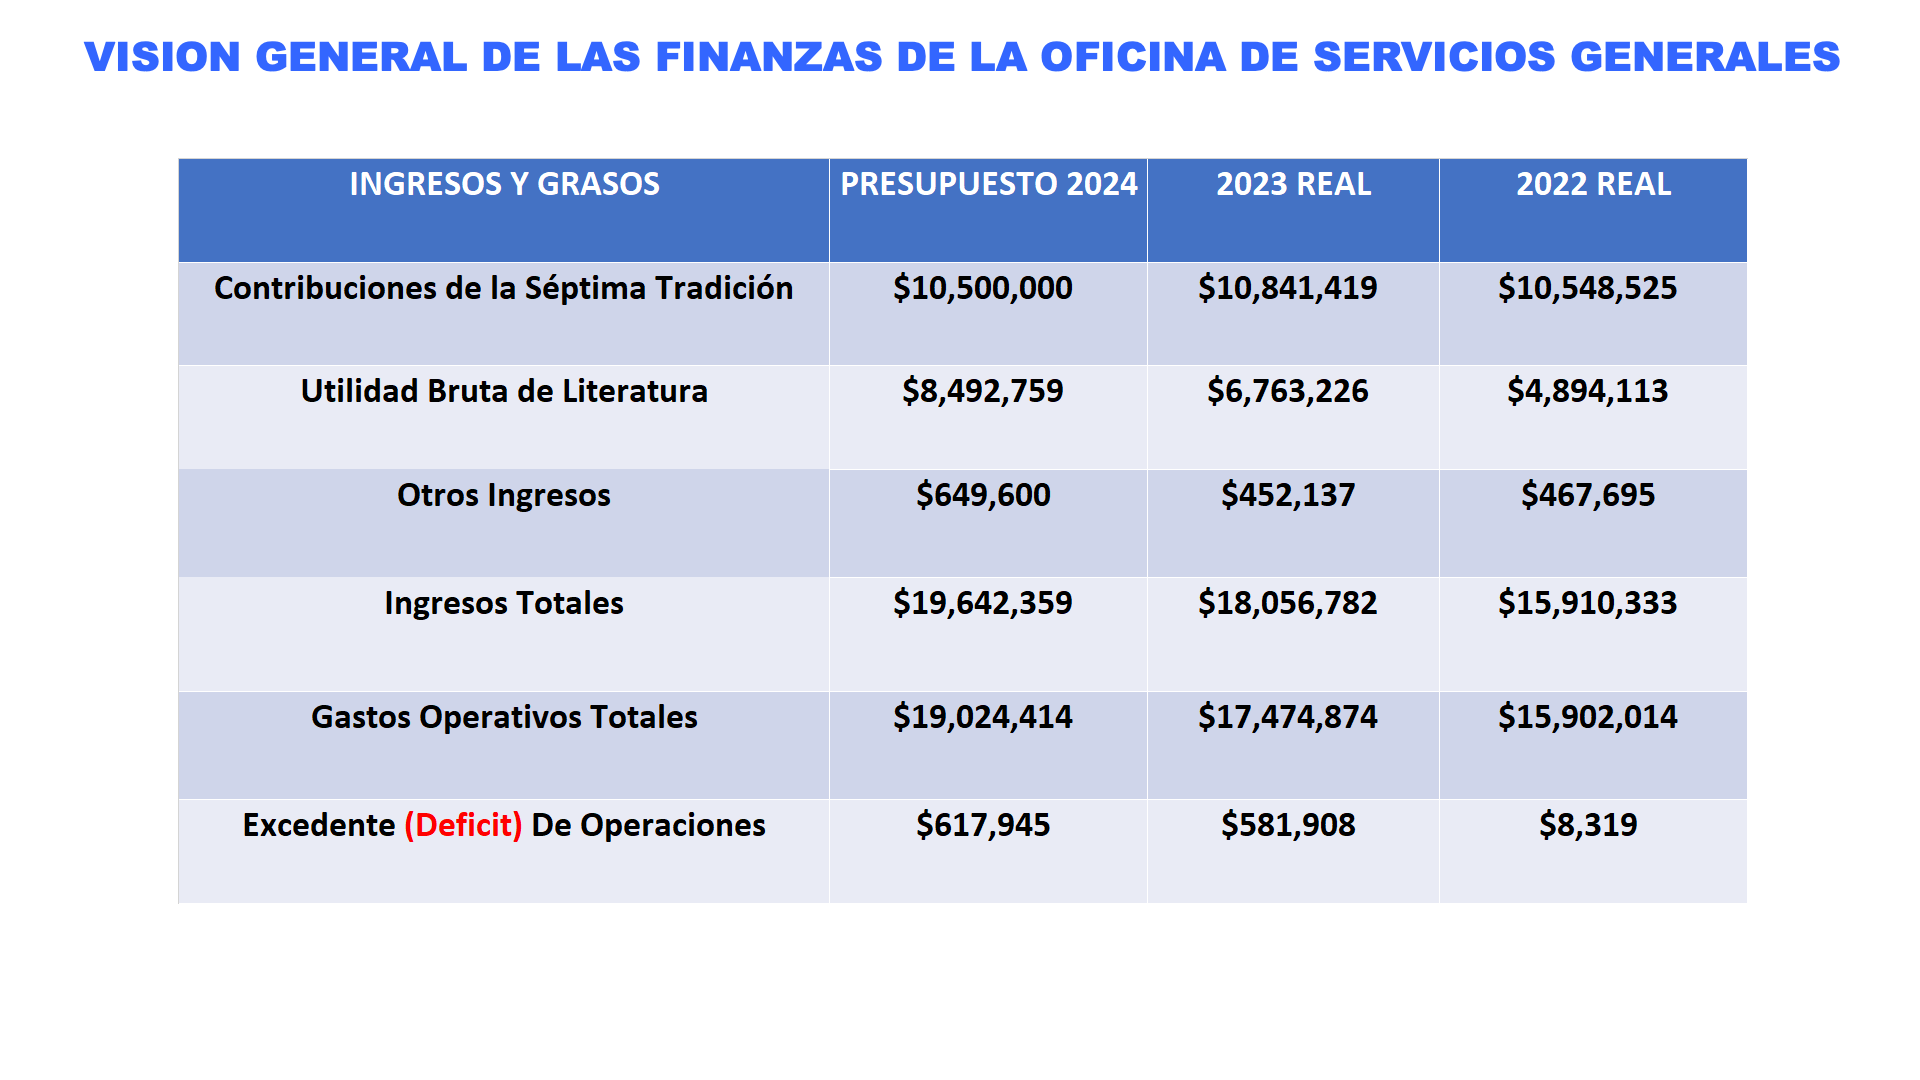 Vision general de las finanzas de la Oficina de Servicios Generales